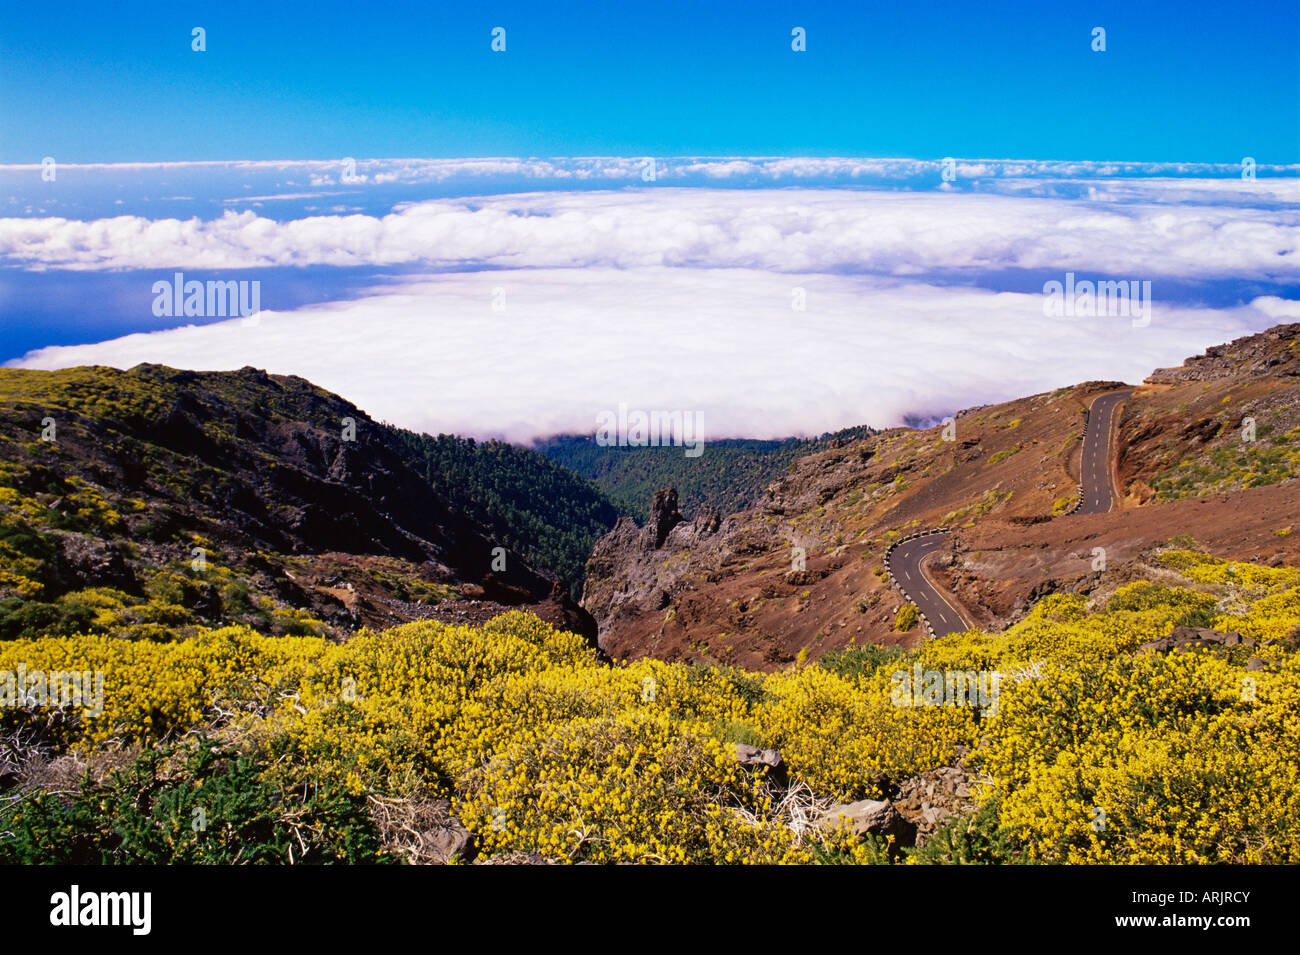 View of Parc Nacional de la Caldera de Taburiente from Roque de los Muchachos, La Palma, Canary Islands, Spain, Atlantic, Europe Stock Photo